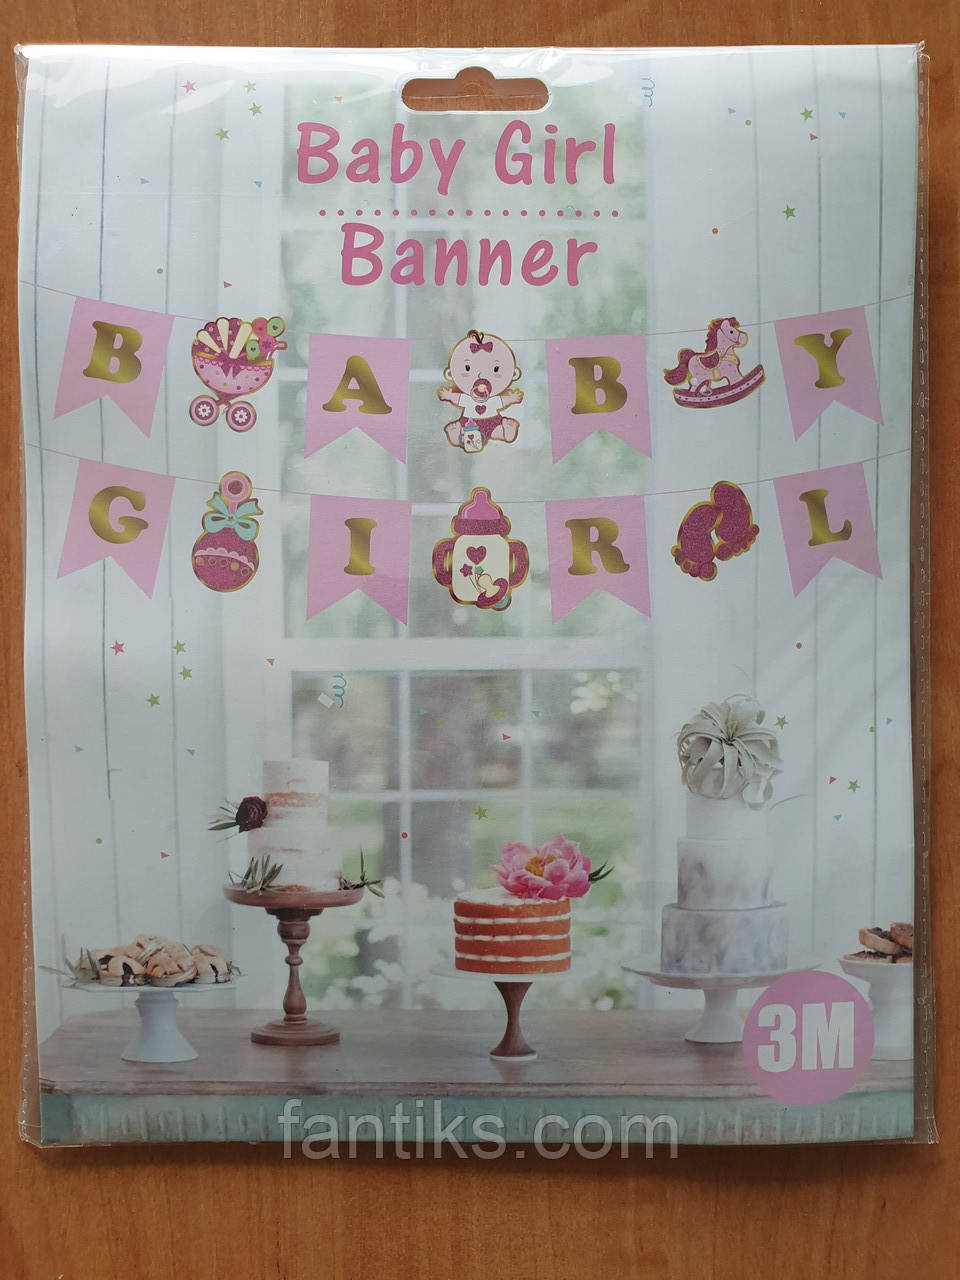 Гірлянда-розтяжка "BABY GIRL" для прикраси кімнати в день зустрічі малючки з пологового будинку